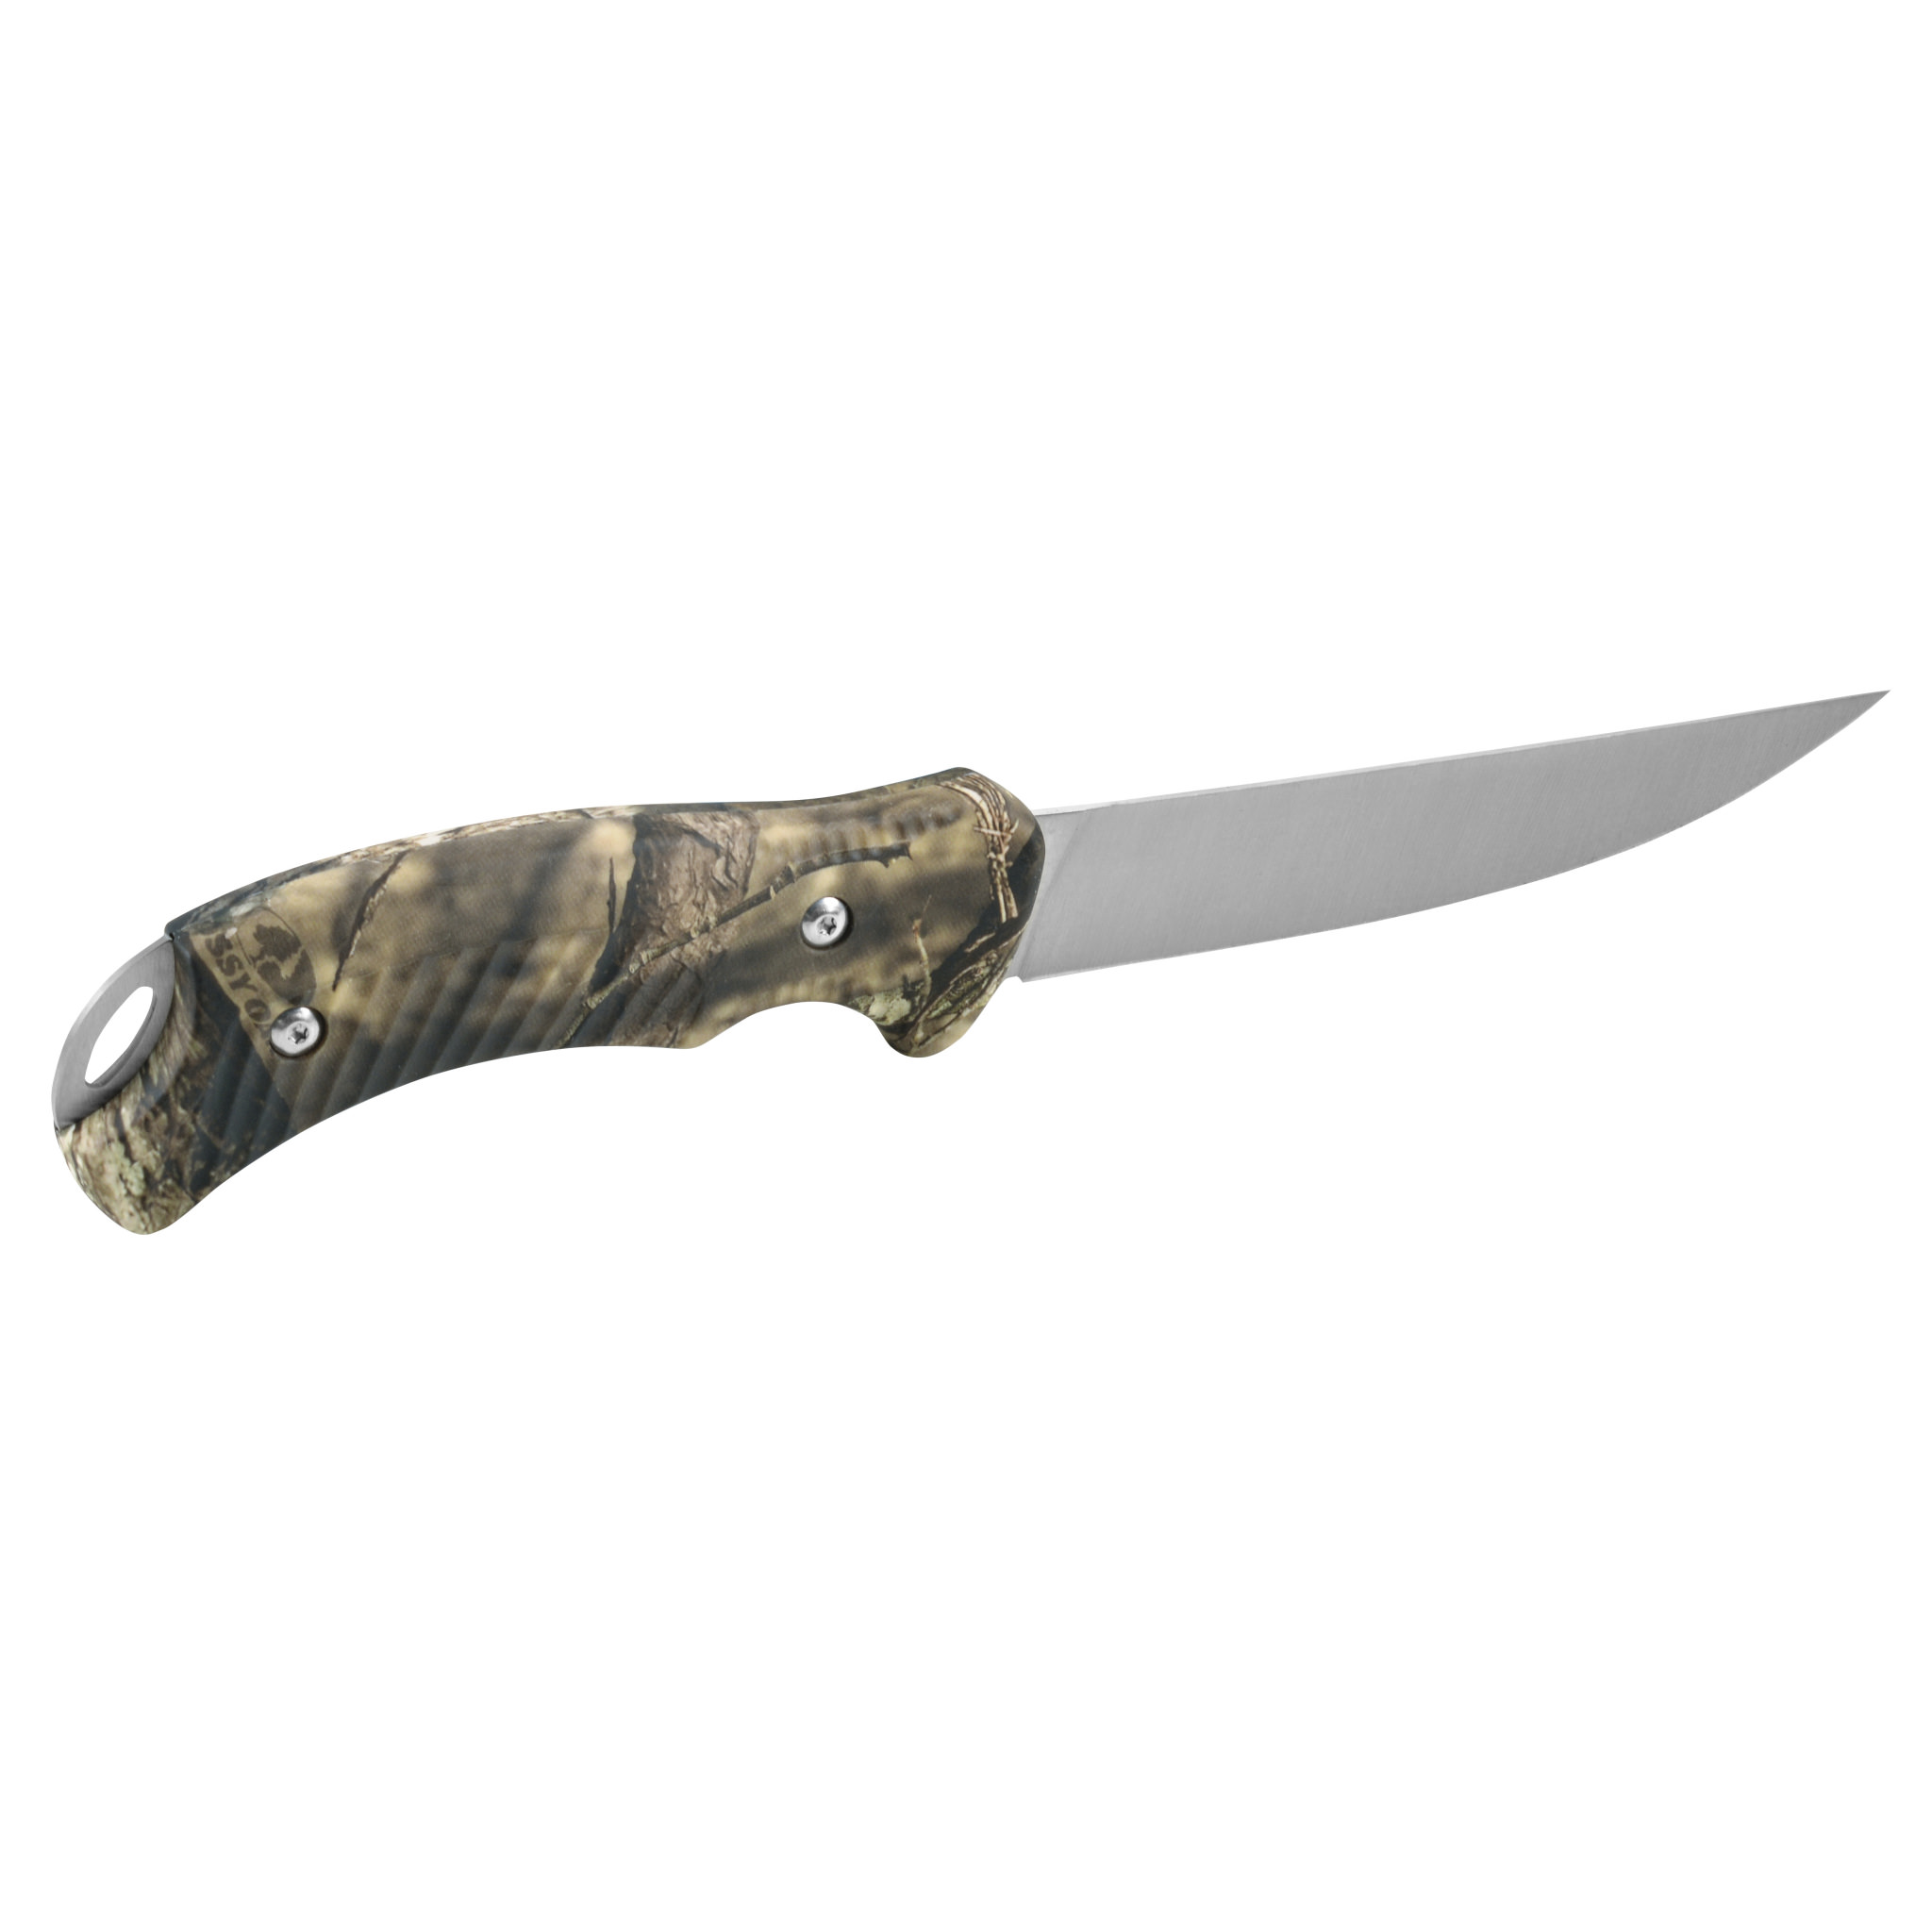 Camillus 10" Boning Knife, 5" Blade, Titanium Bonded, Mossy Oak with Lanyard Hole and Sheath - image 4 of 6